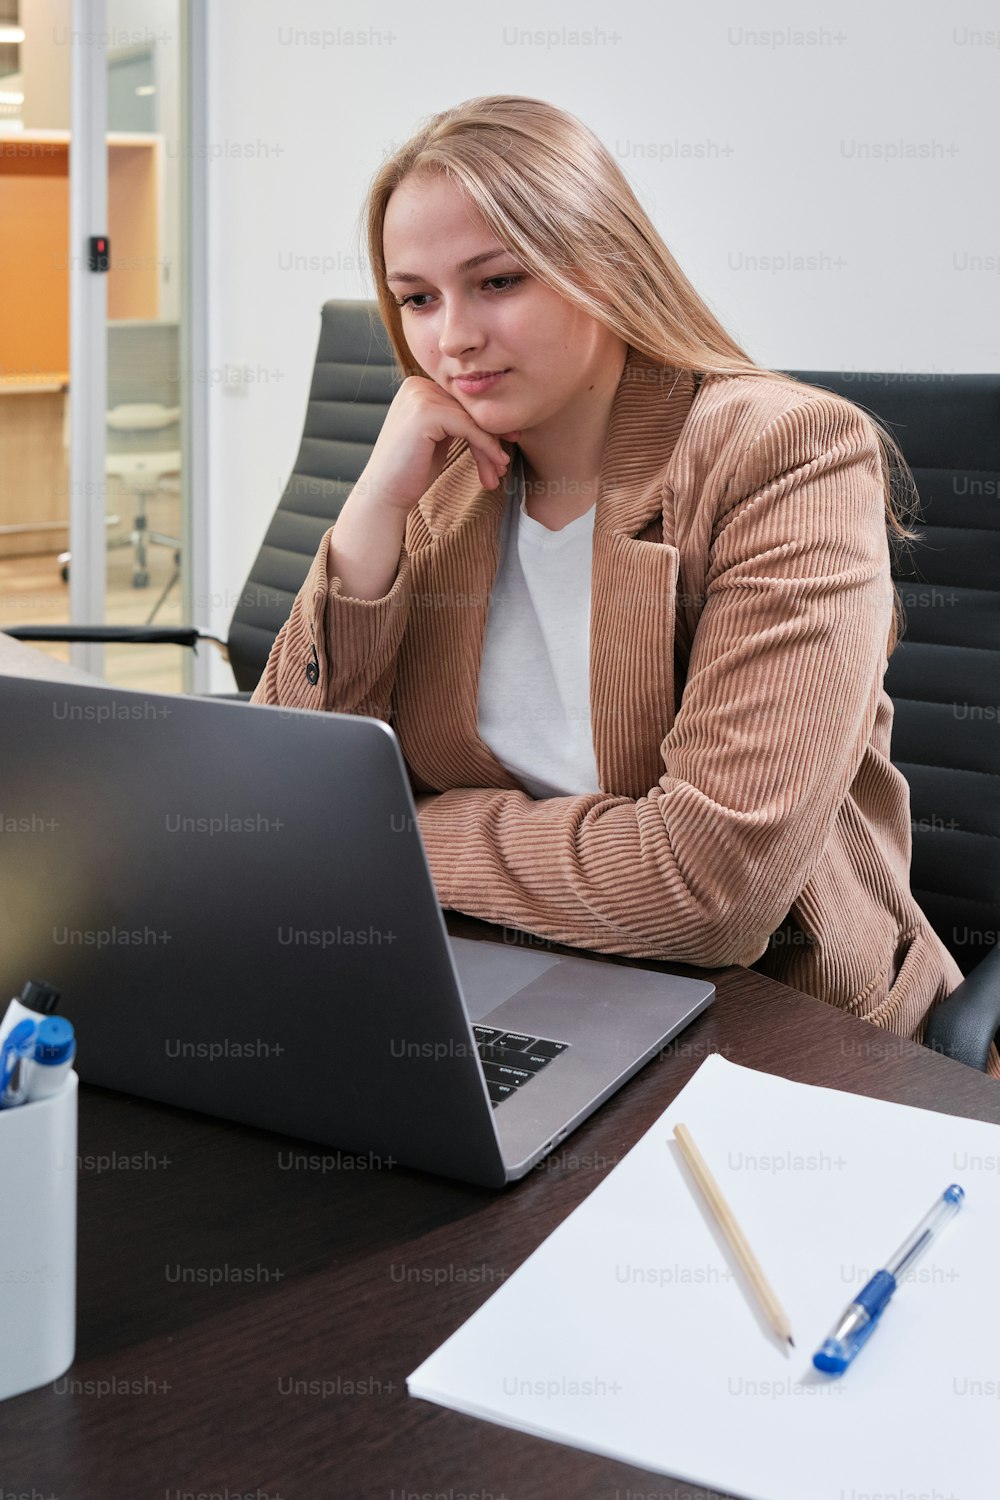 Una mujer sentada frente a una computadora portátil